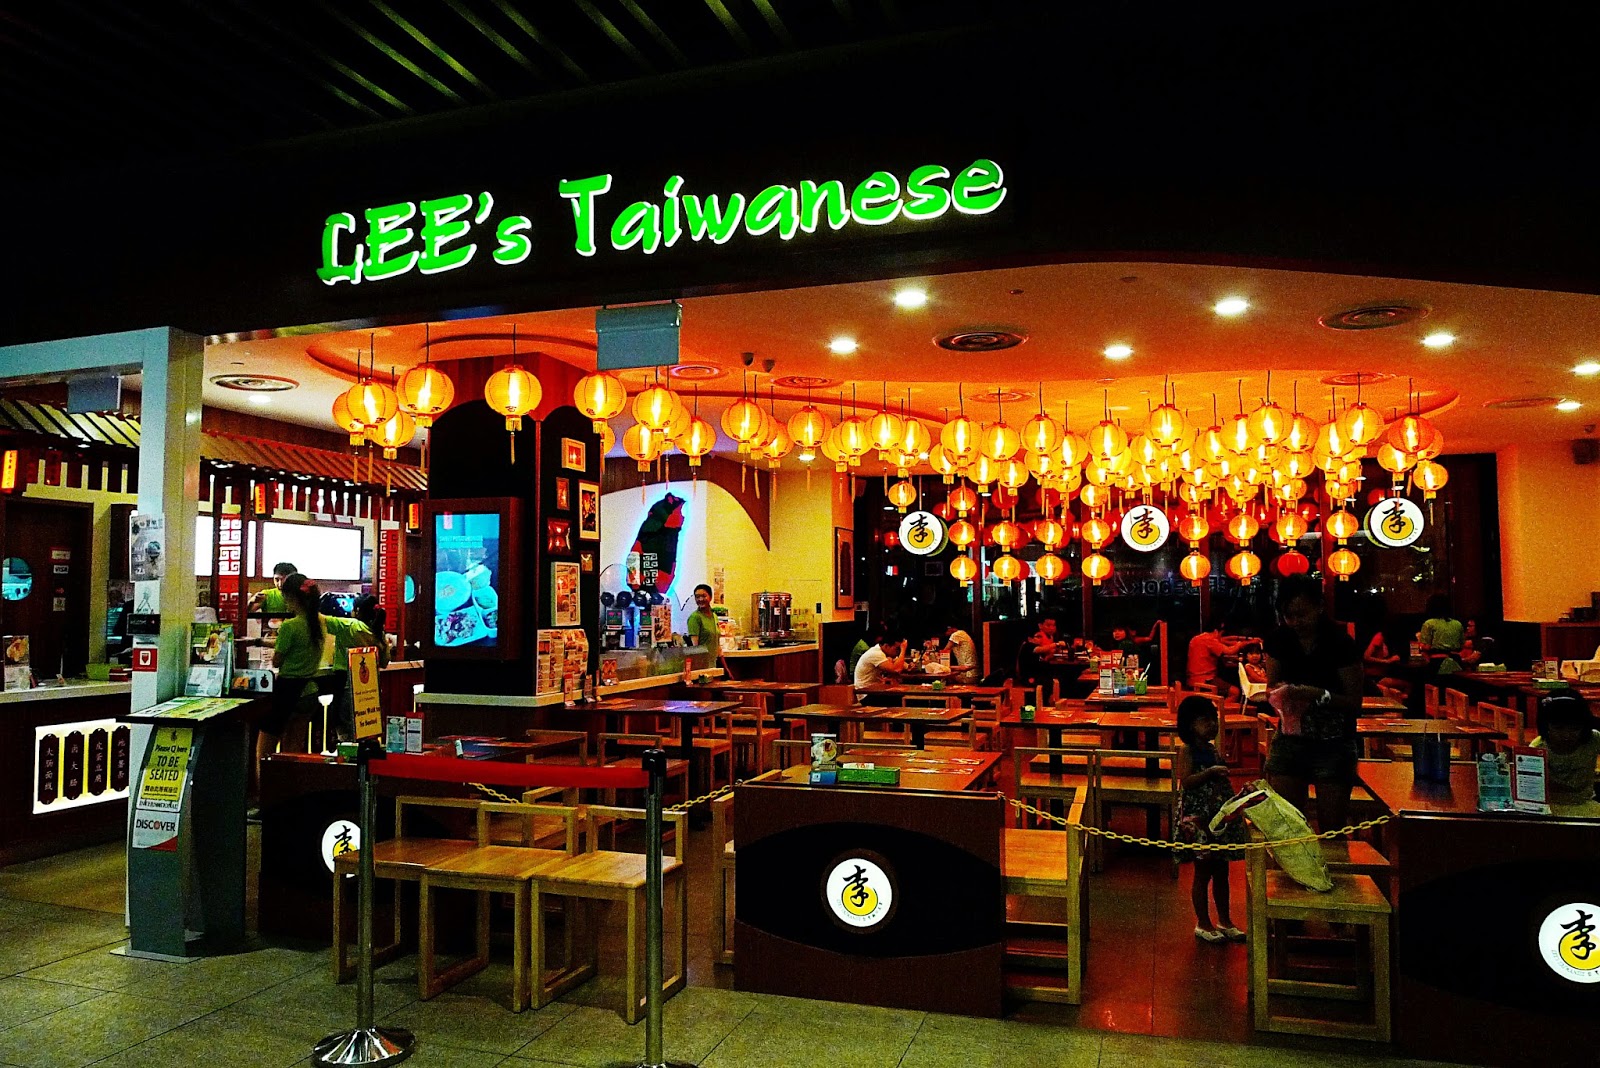 Lee's Taiwanese